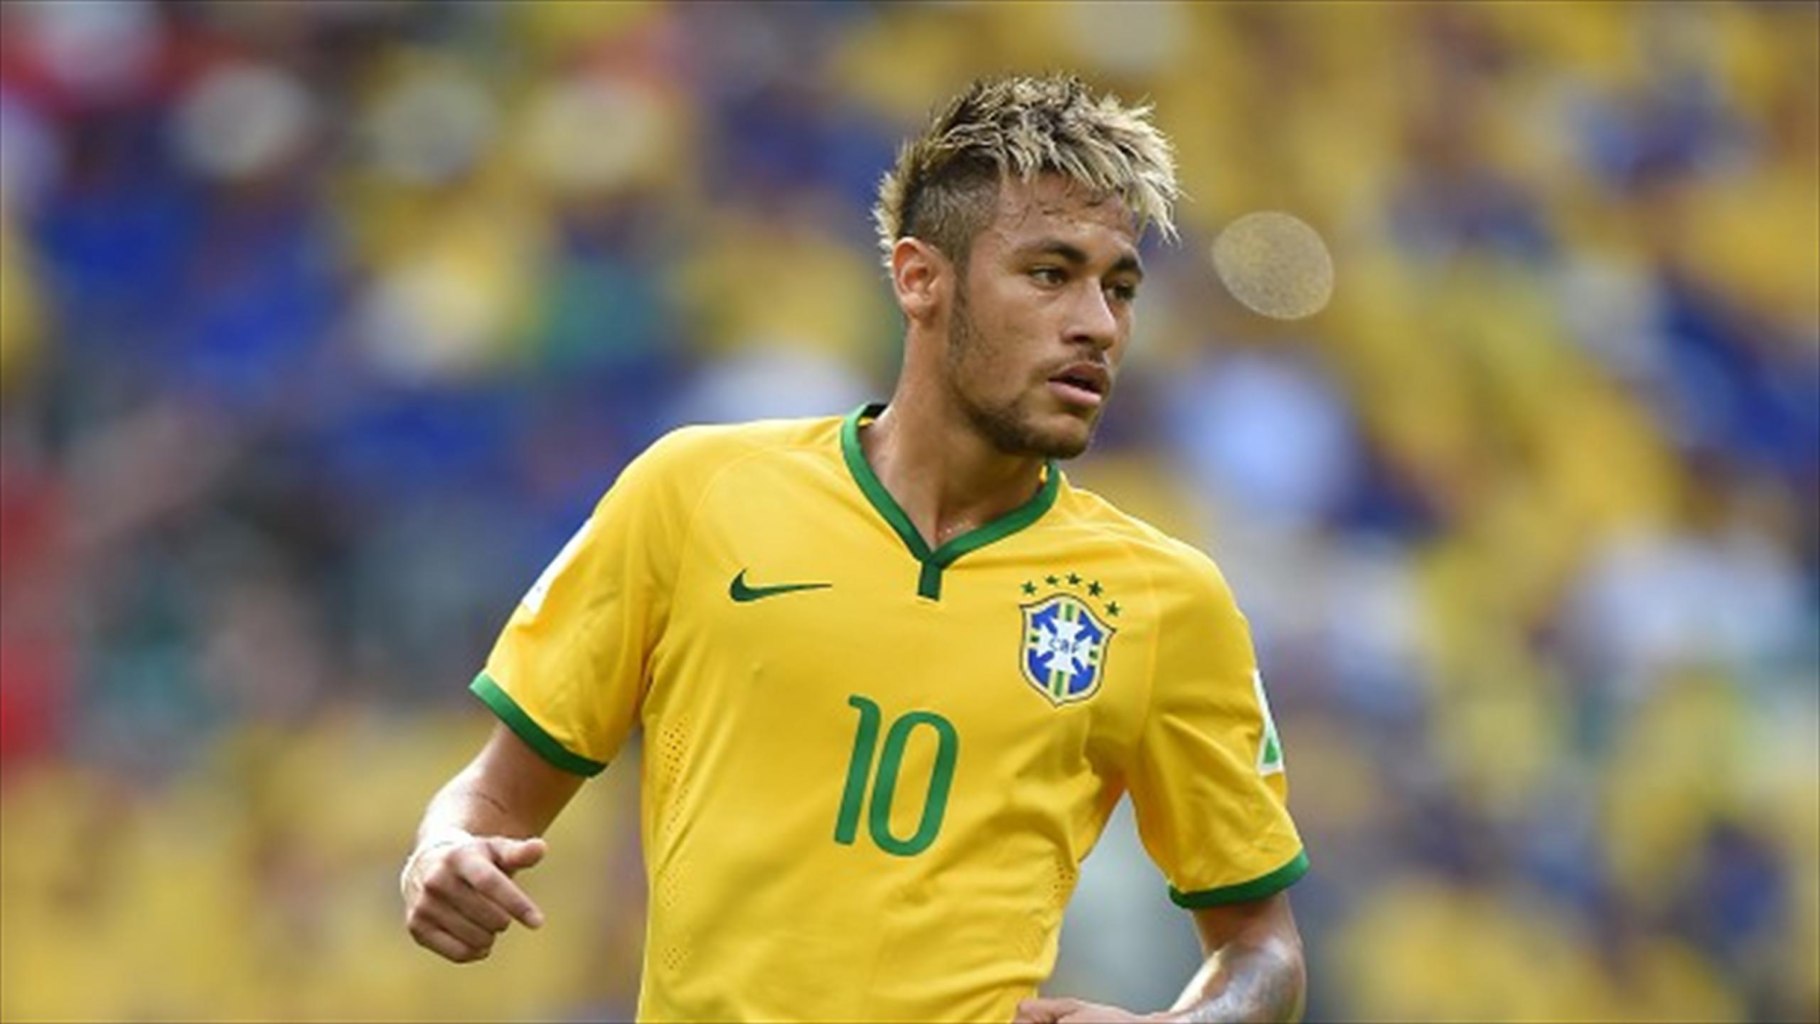 Neymar wearing Brazil's jersey number 10